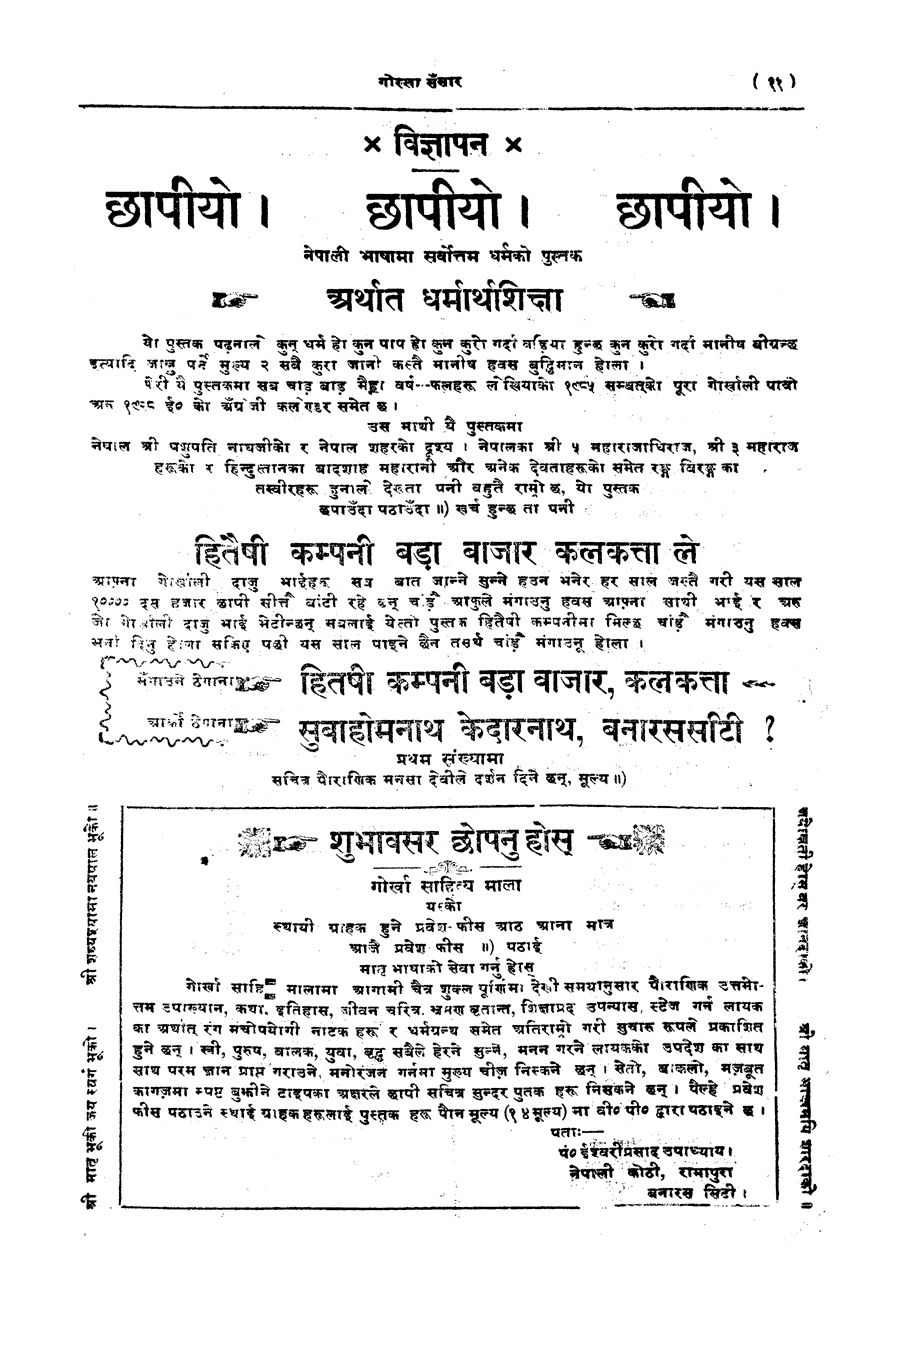 Gorkha Sansar, 13 April 1928, page 11